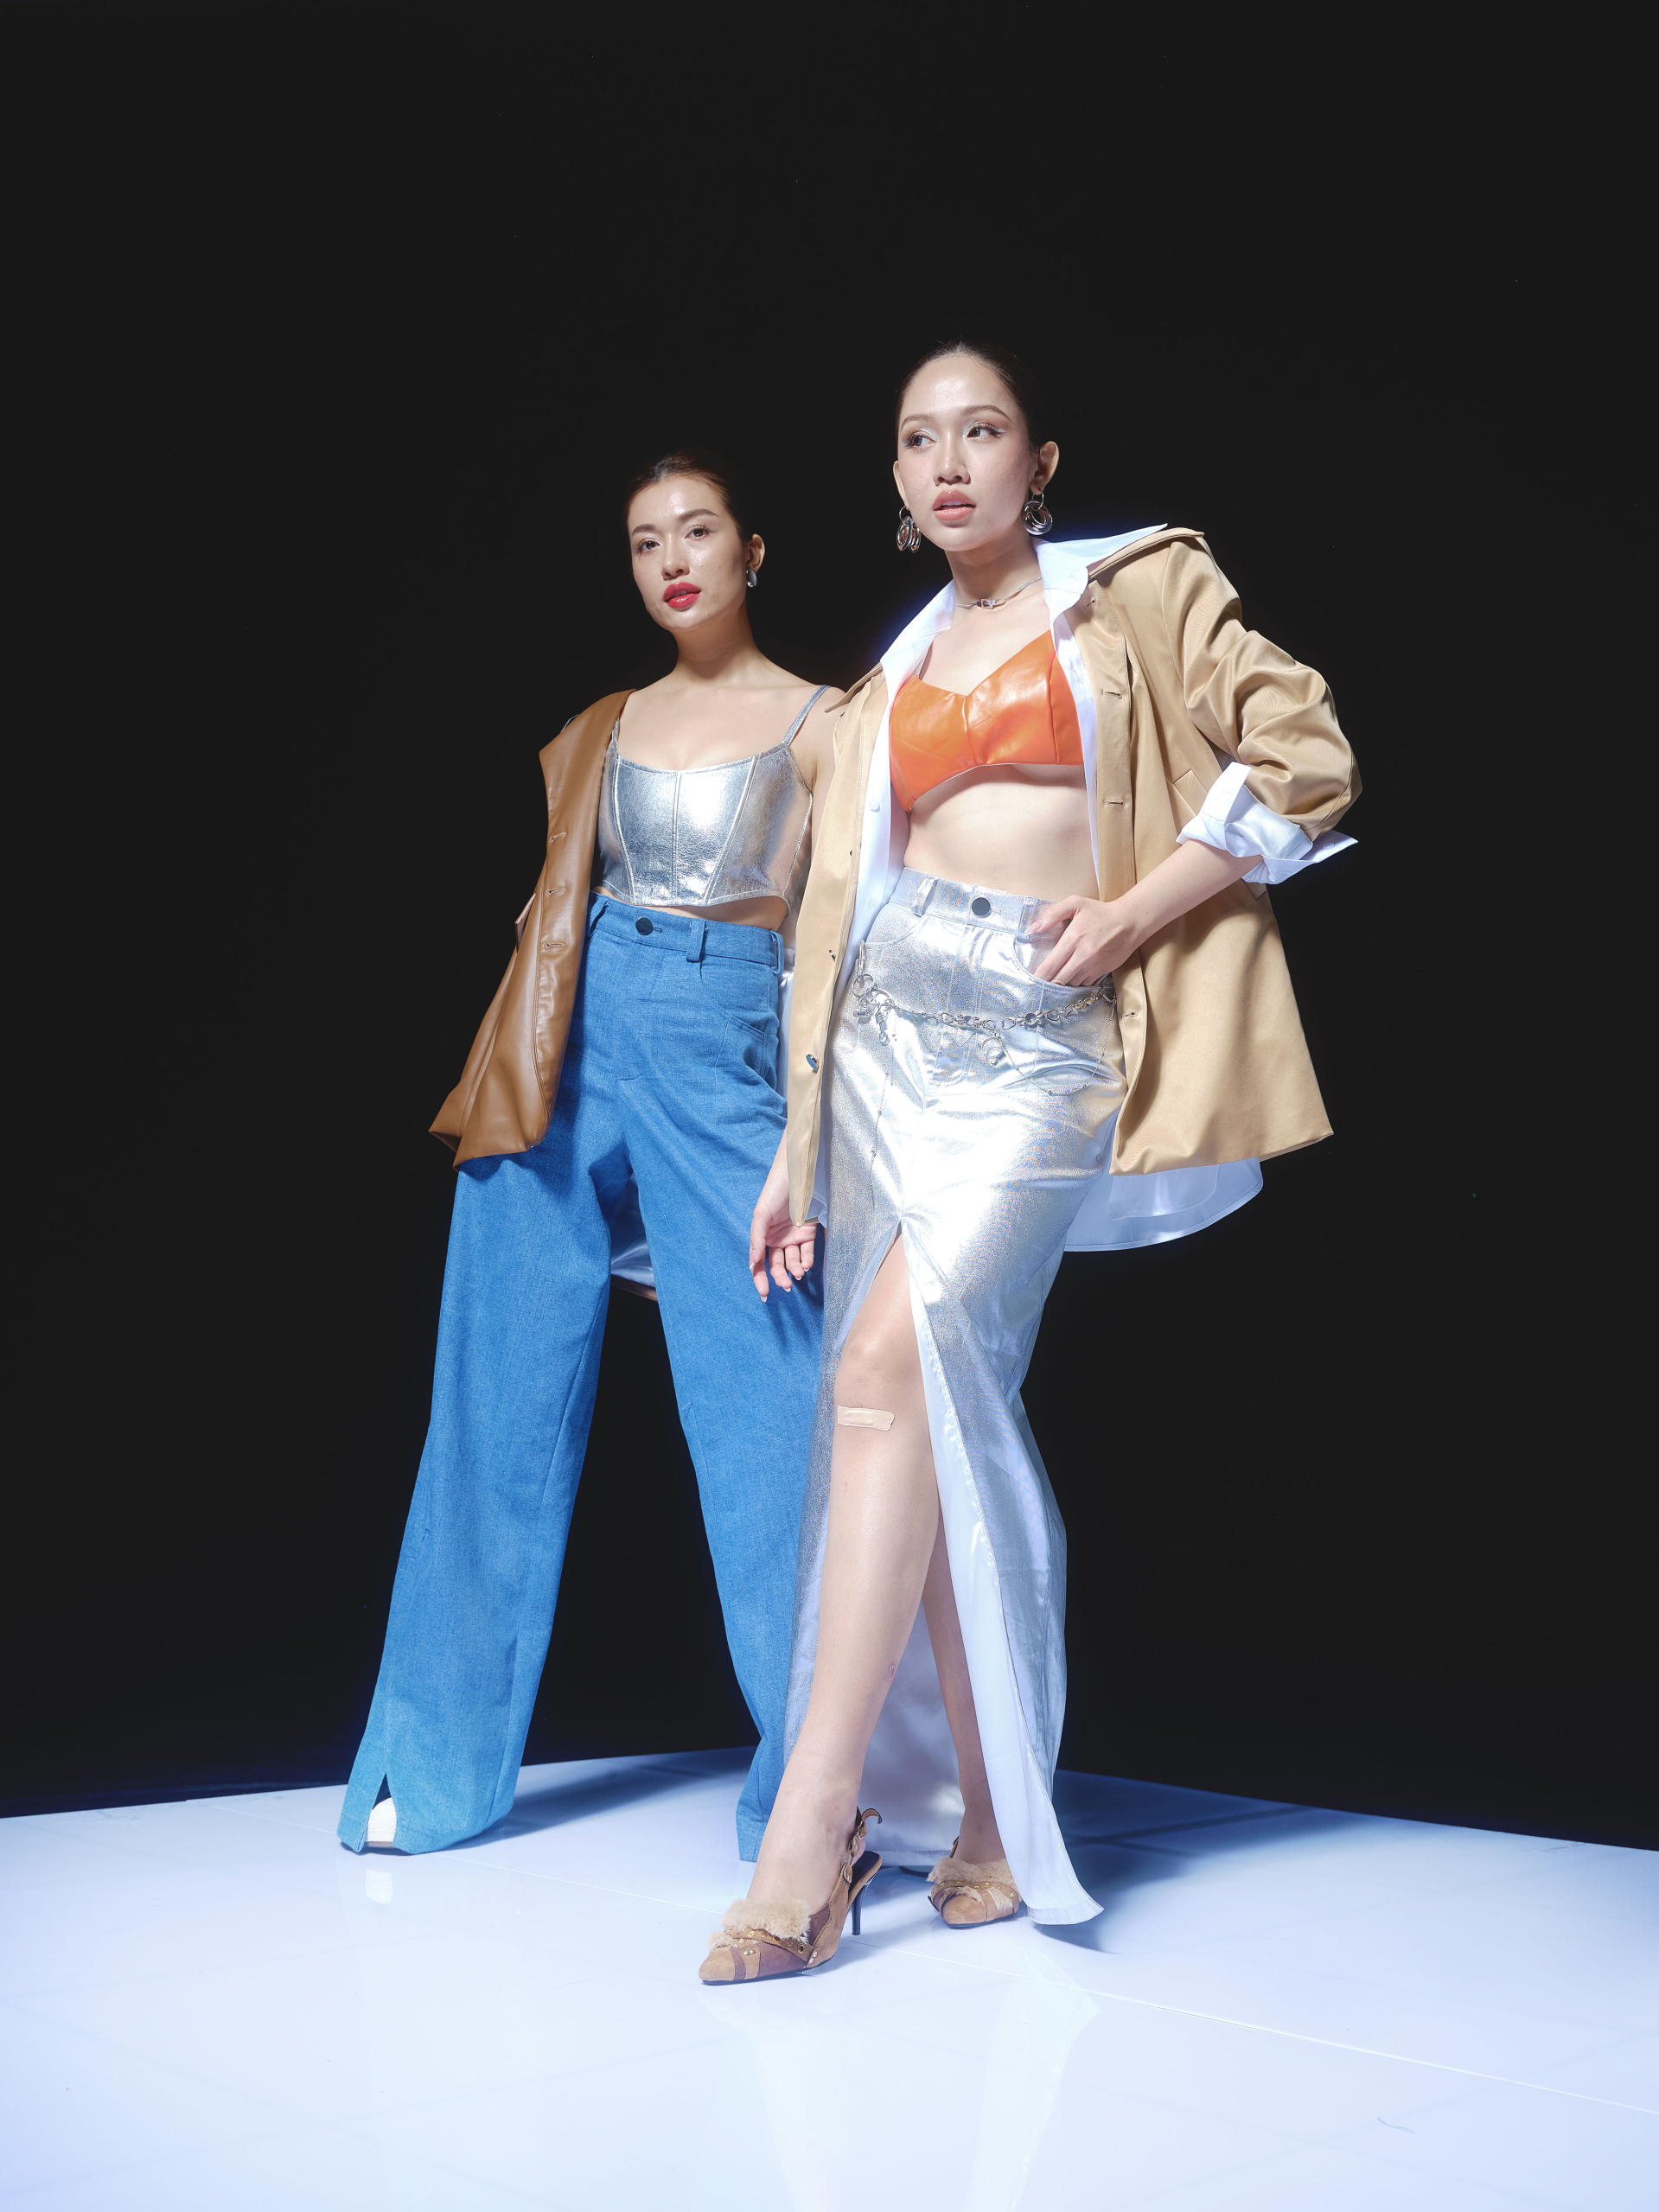 Hoa hậu Đỗ Nhật Hà diện váy cắt xẻ, khoe chiều cao ấn tượng trong BST mới của NTK Hà Nhật Tiến - ảnh 6